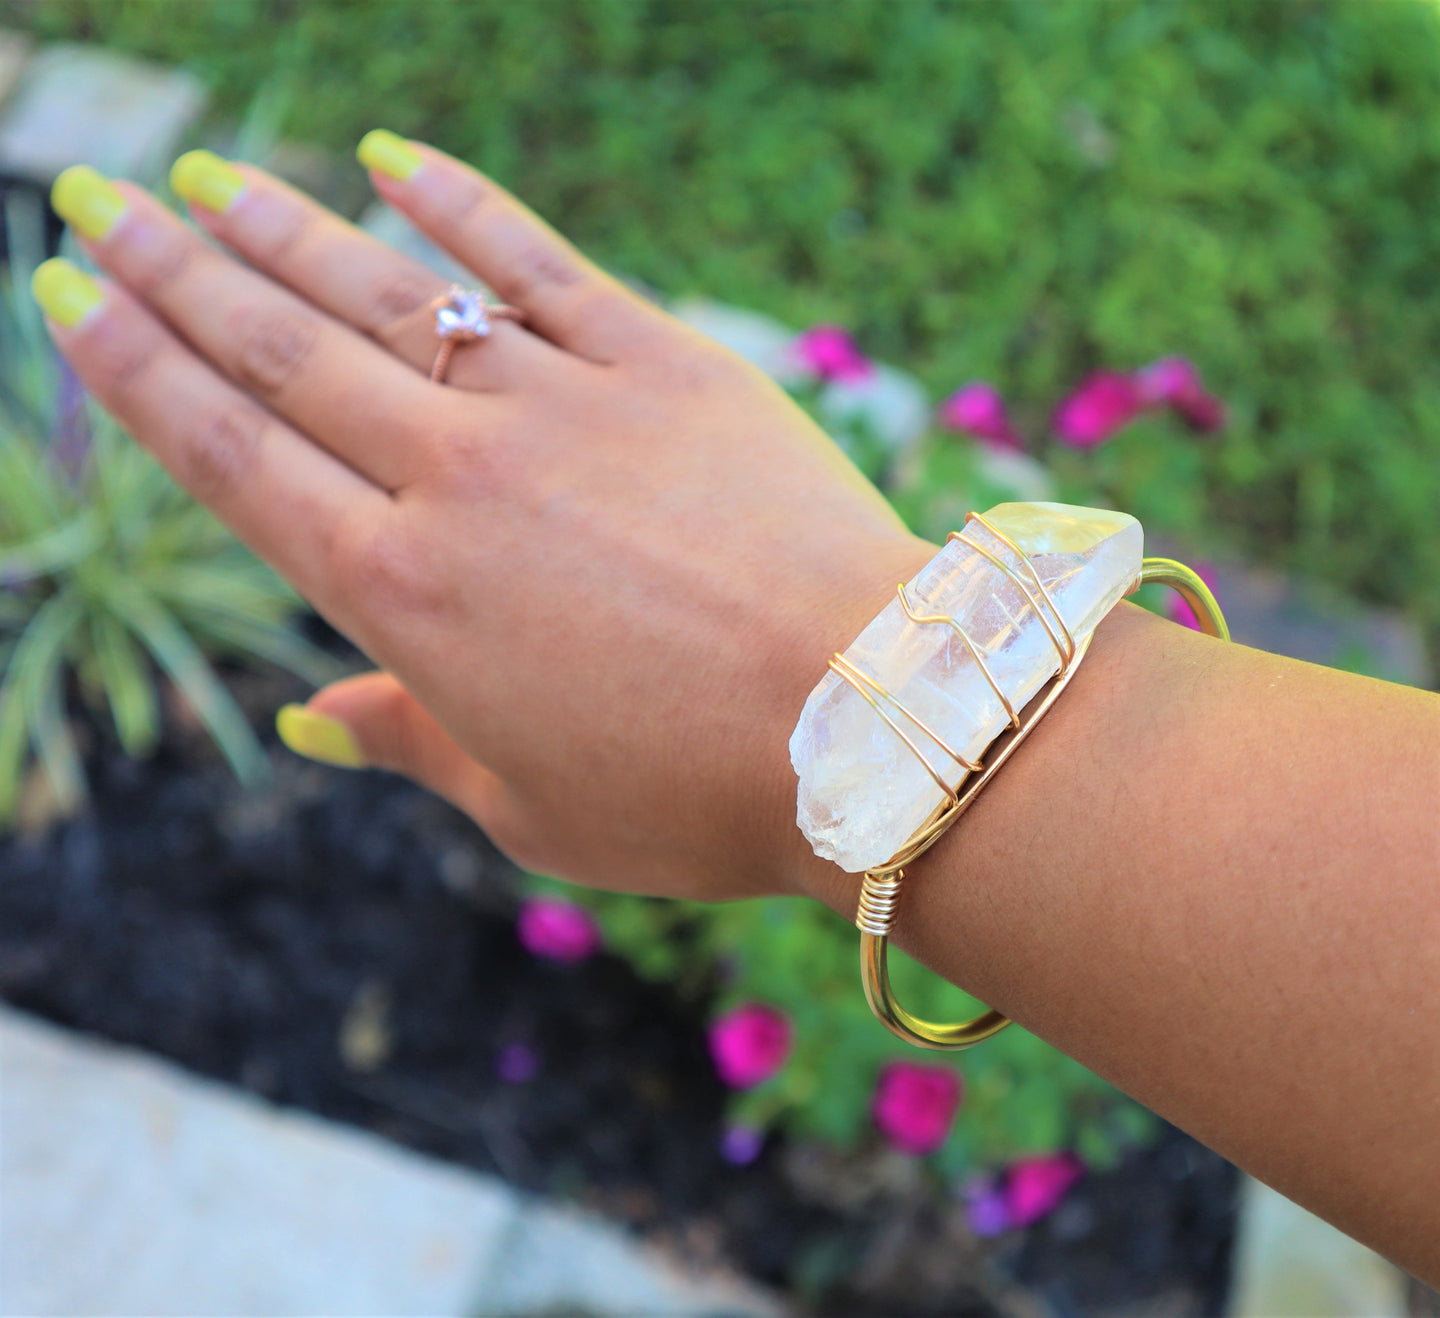 raw quartz crystal wrapped with gold wire around raw brass bracelet on women's wrist.